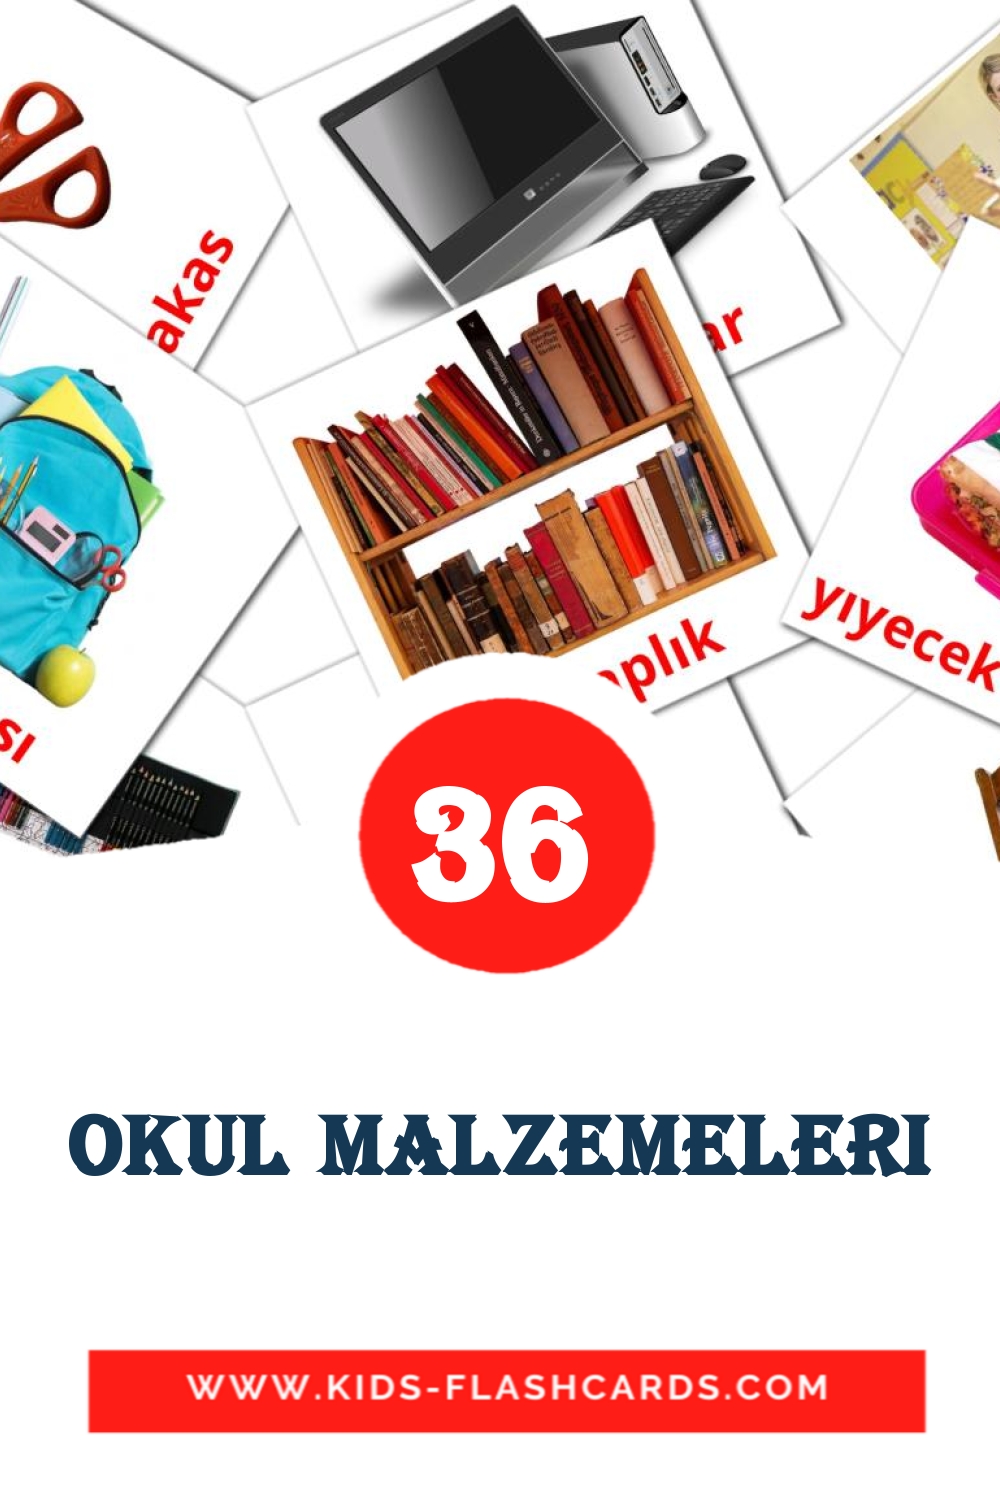 36 Okul malzemeleri Picture Cards for Kindergarden in turkish